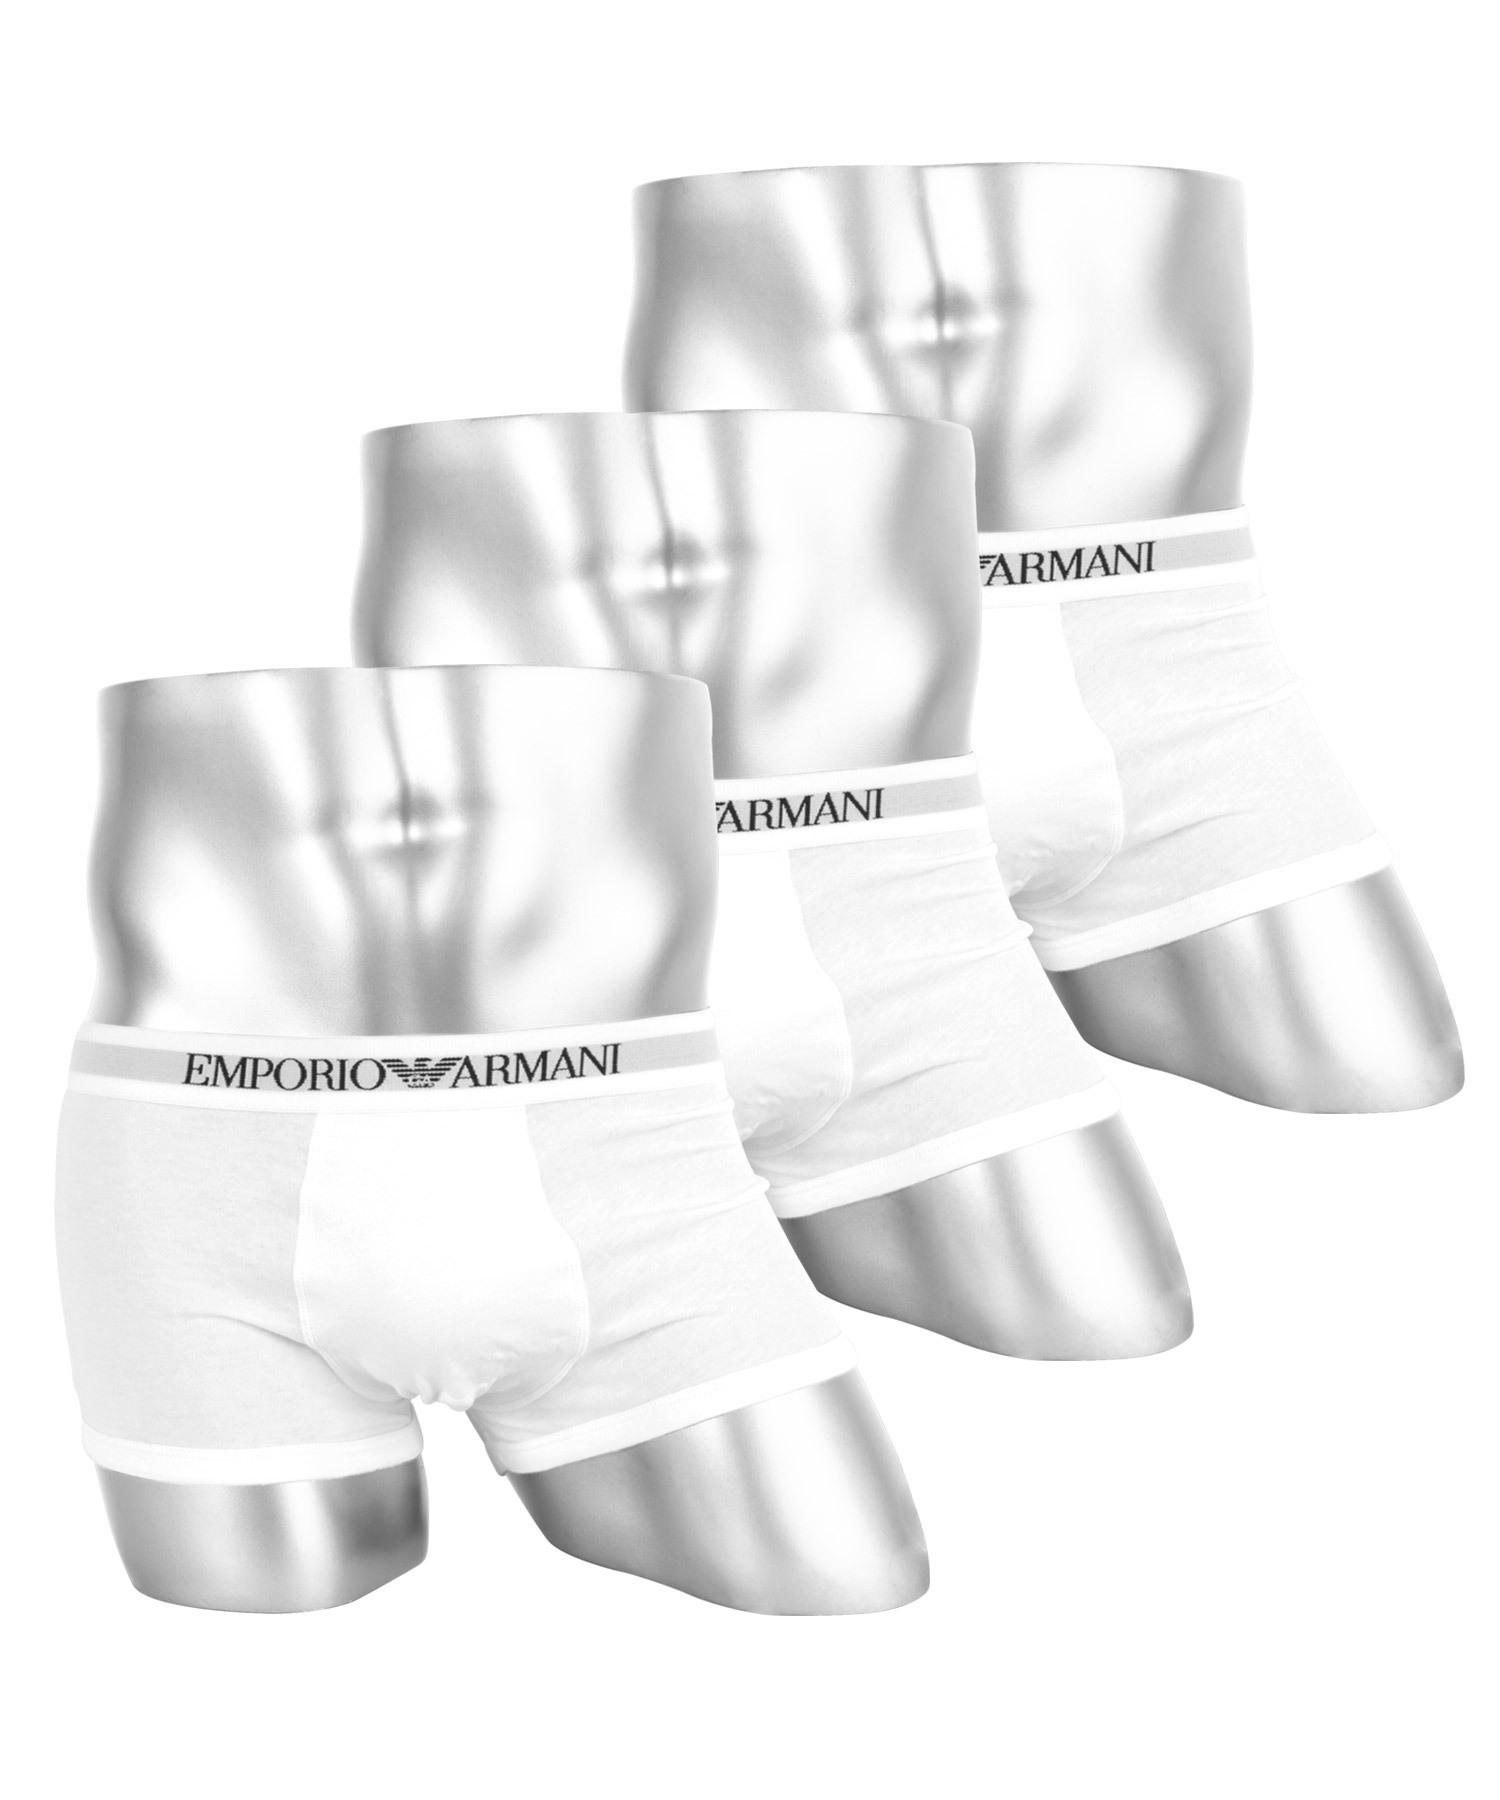 エンポリオ EMPORIO ARMANI ボクサーパンツ 3枚セット メンズ 綿100% プレゼント...